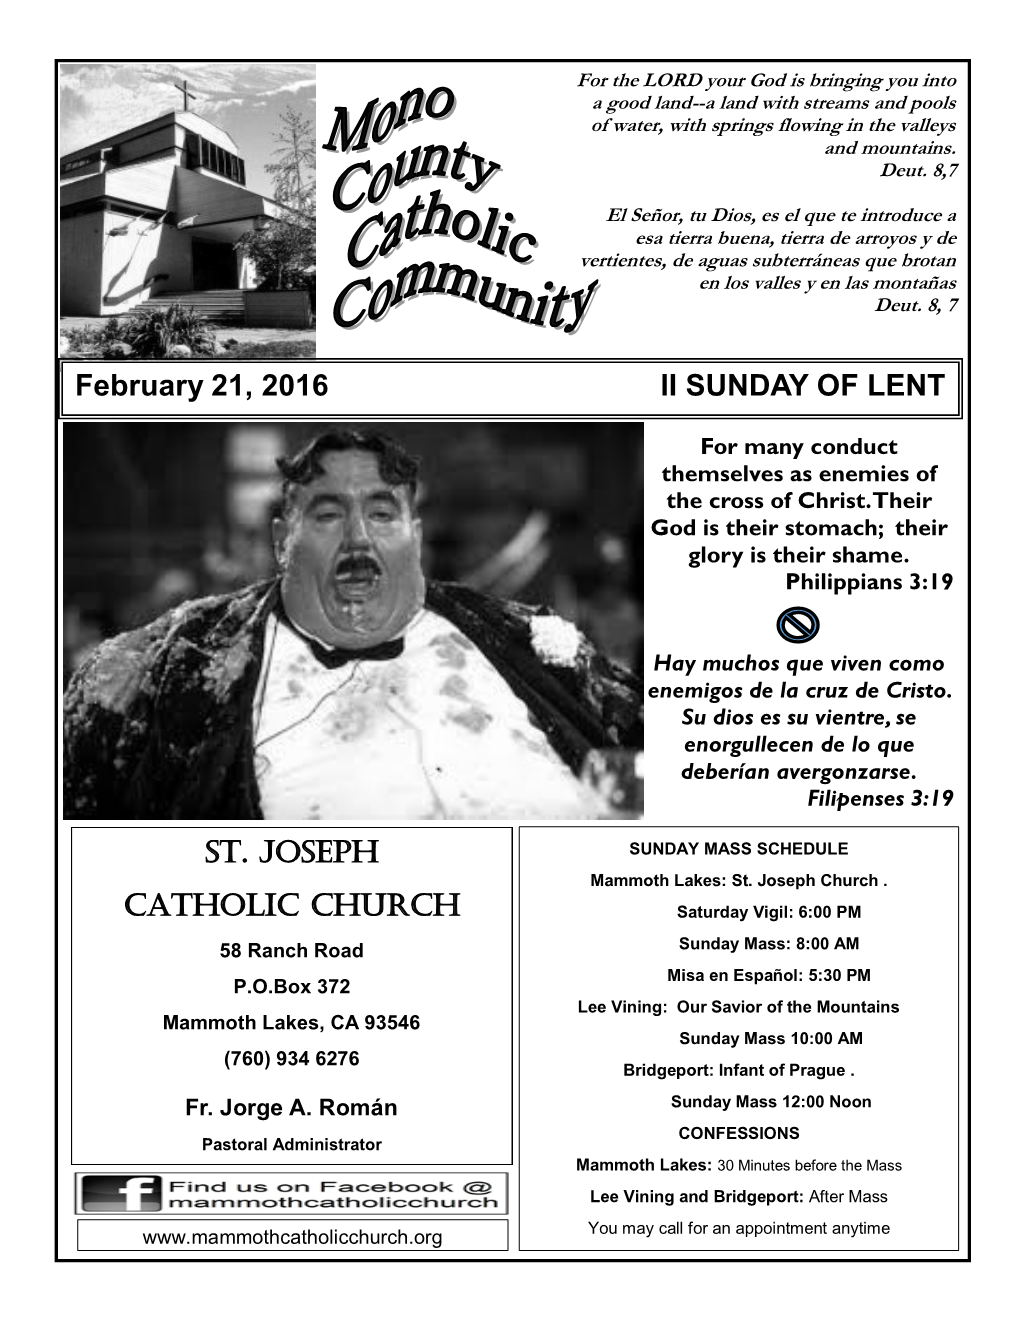 February 21, 2016 II SUNDAY of LENT ST. JOSEPH CATHOLIC